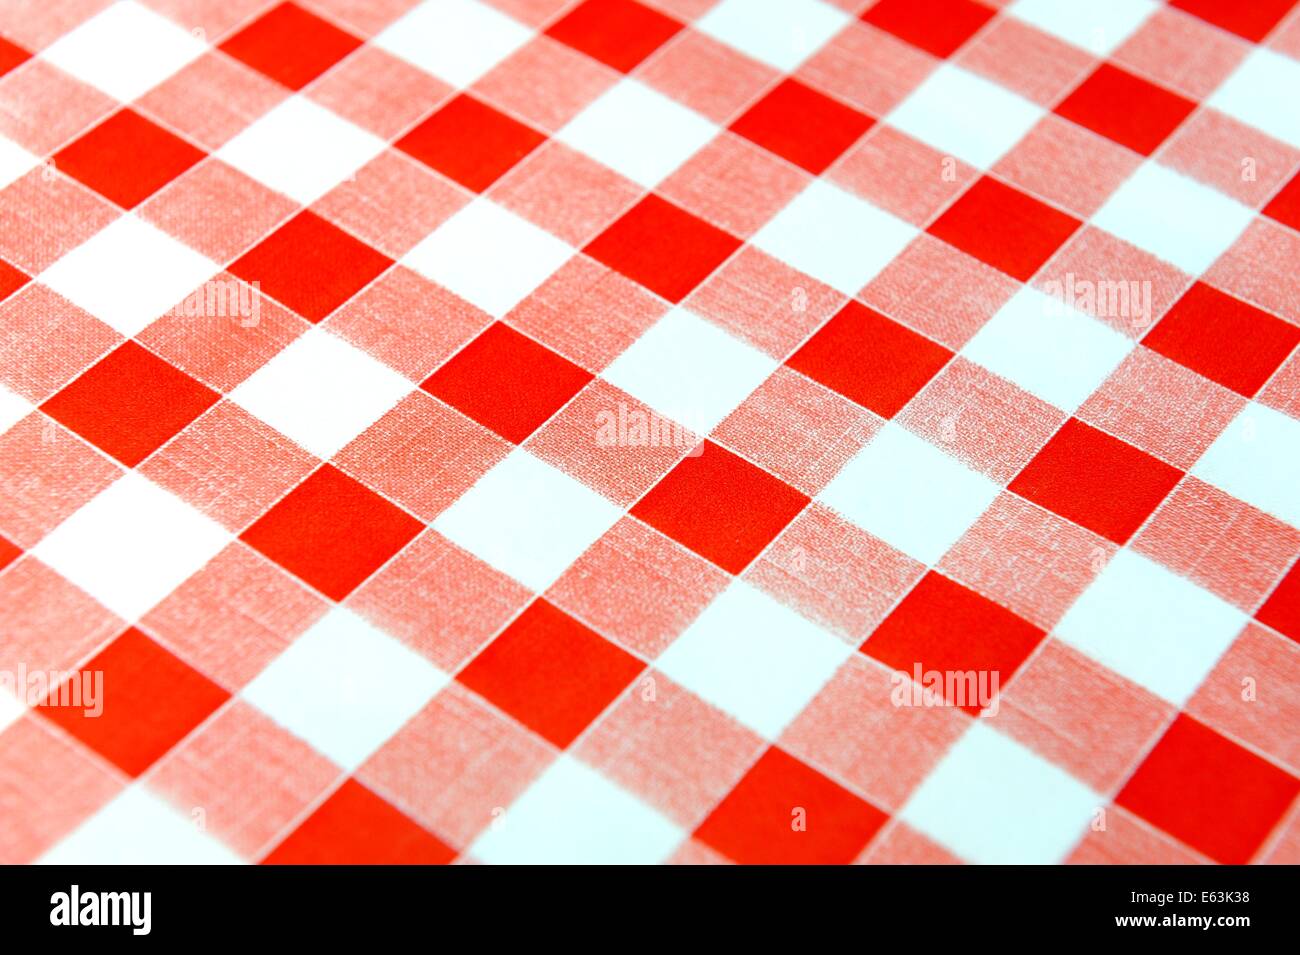 Eine rote karierte Tischdecke Hintergrund Stockfoto